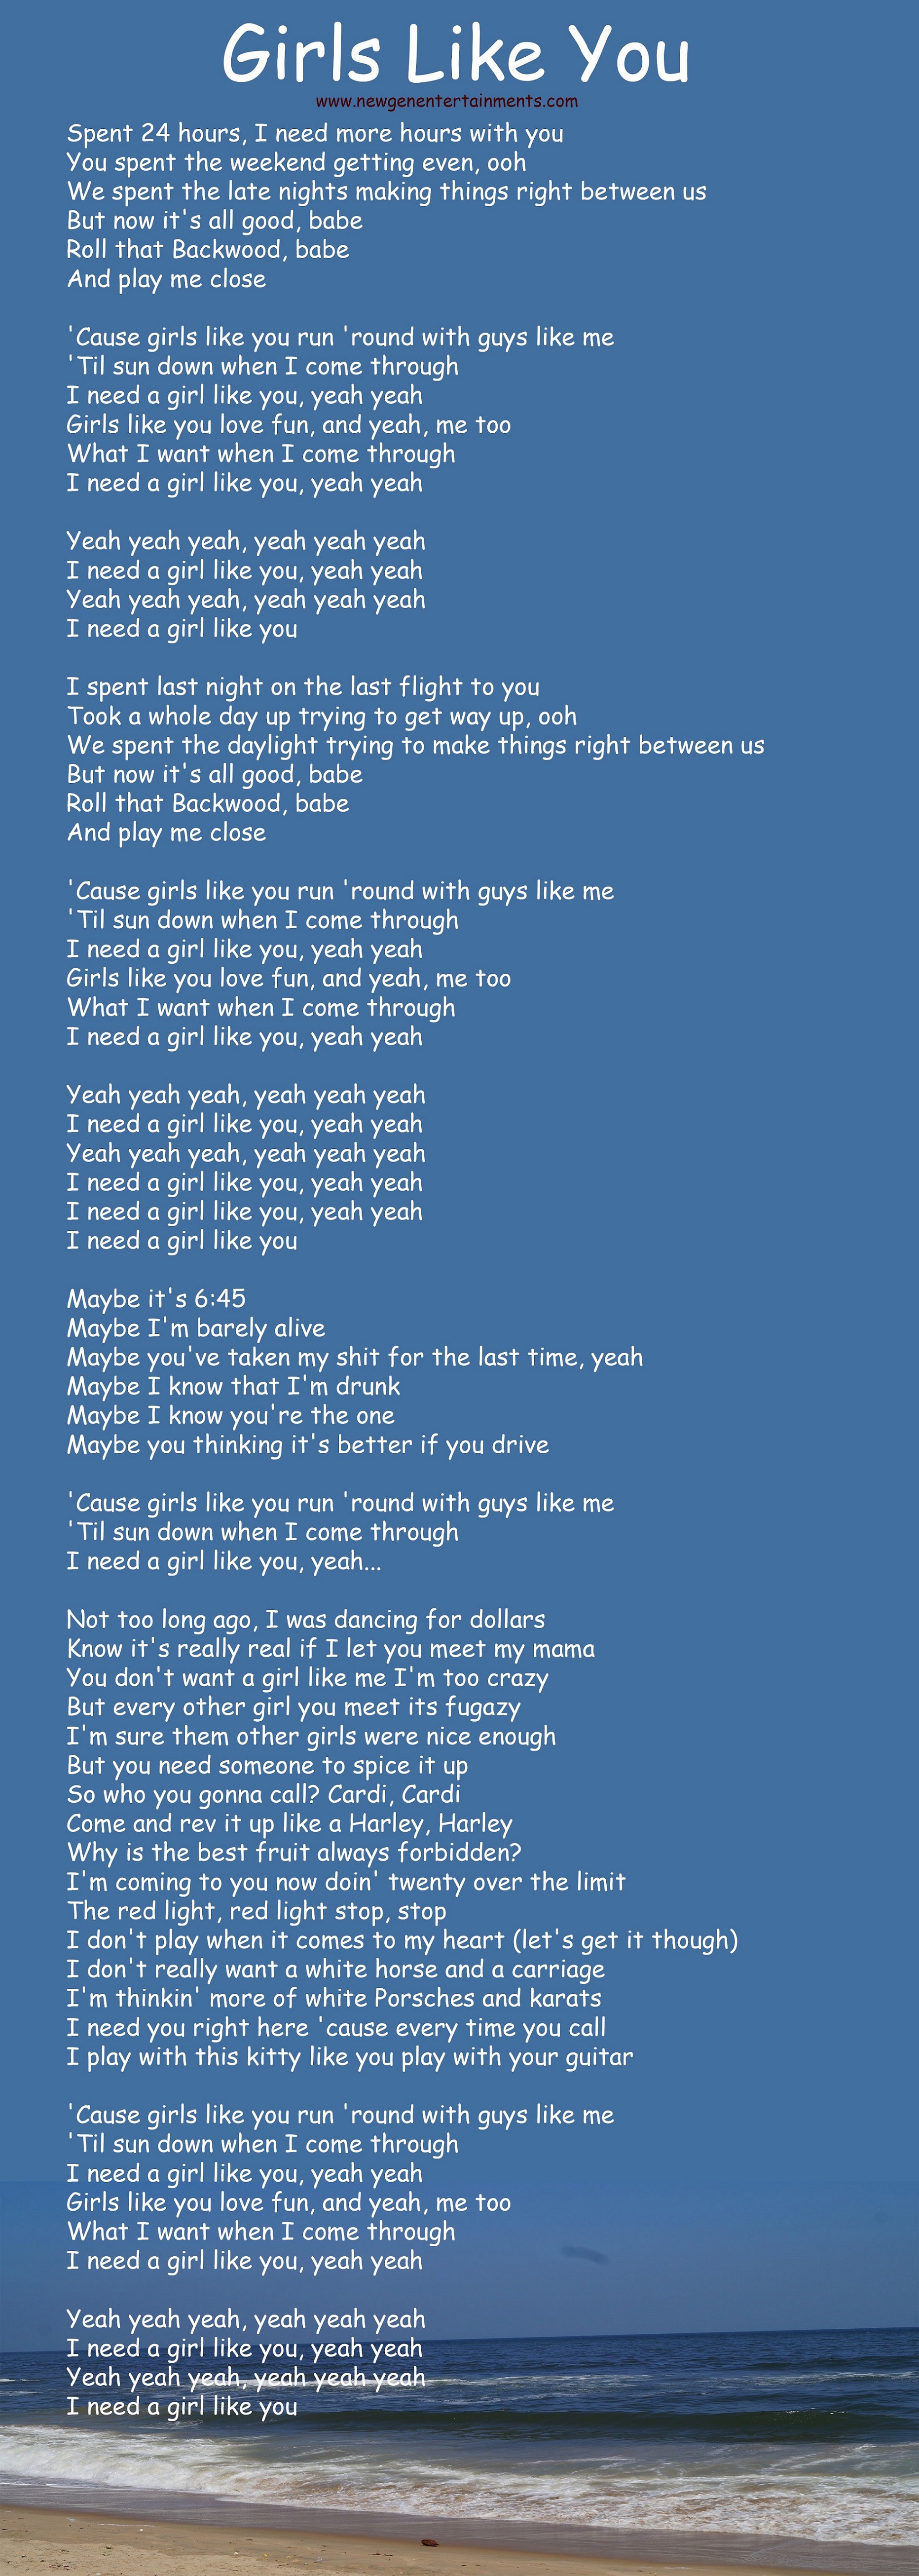 girls like you lyrics Maroon 5